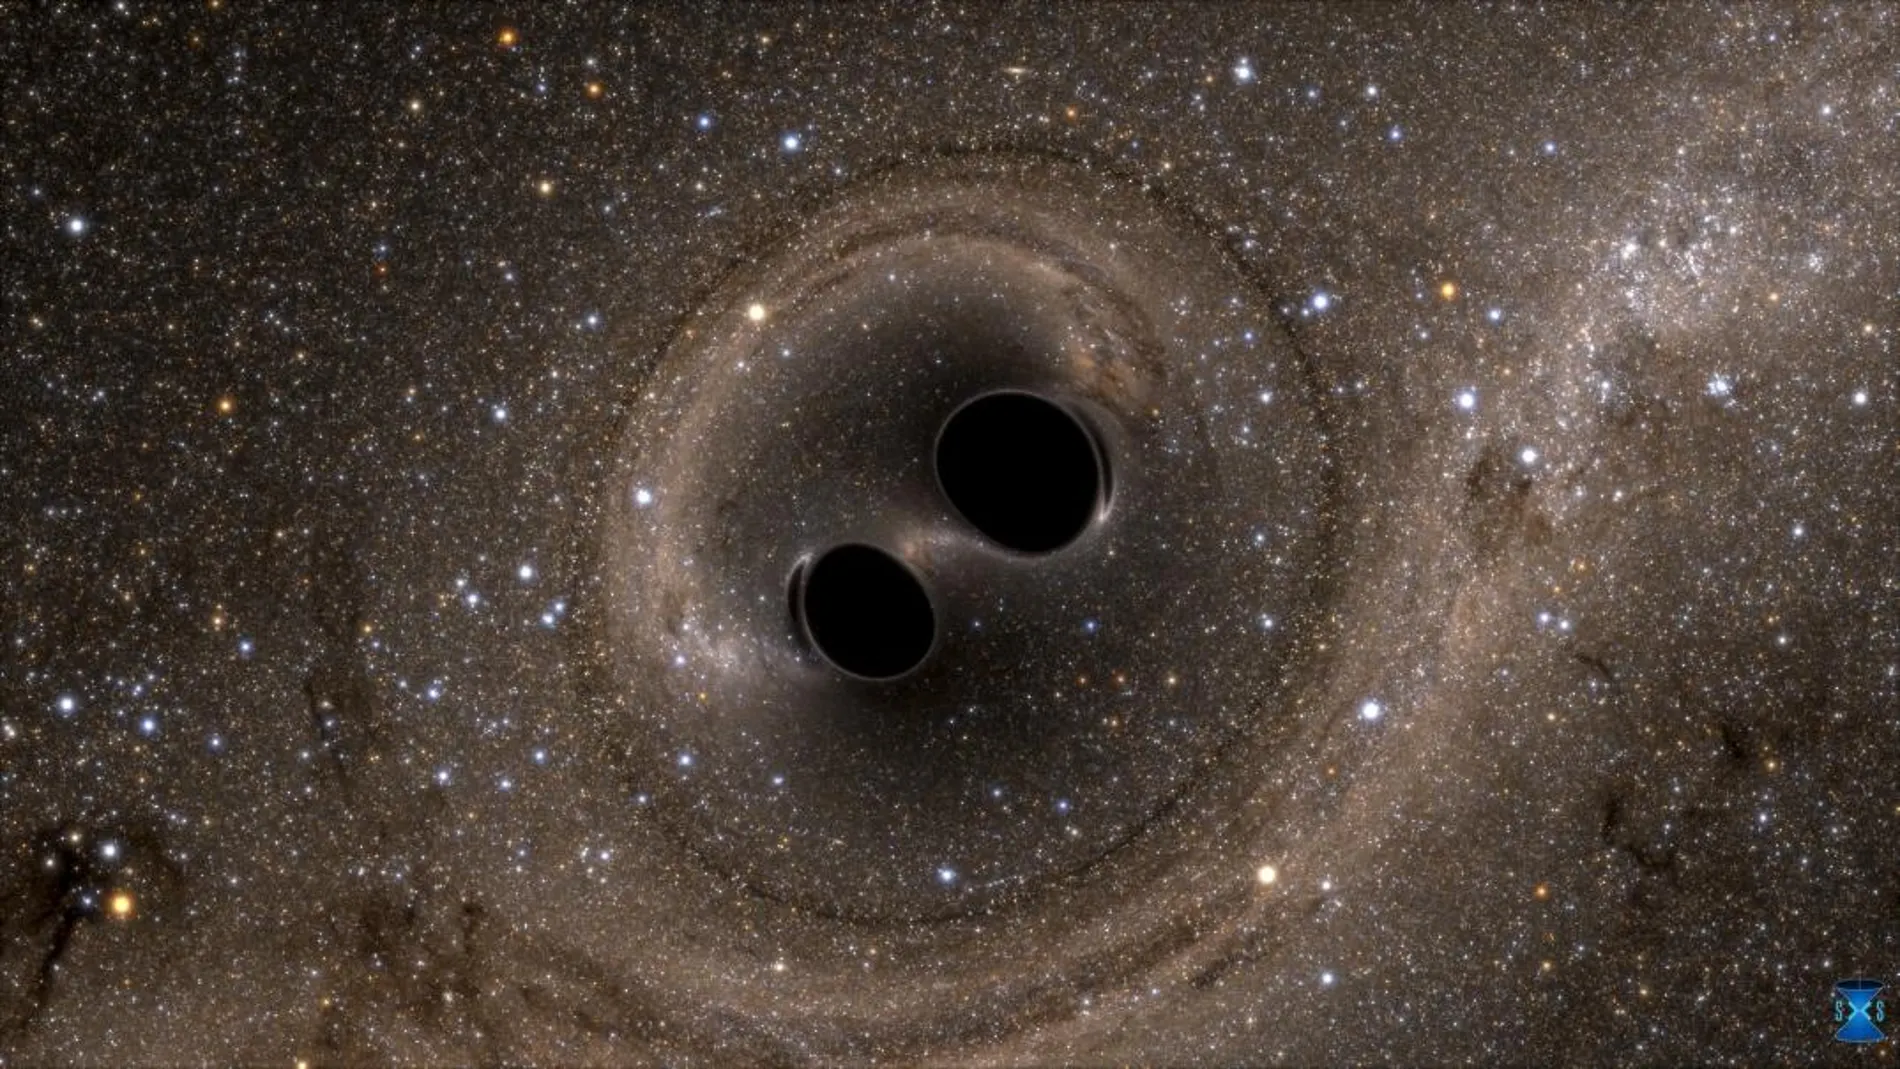 Siimulación de dos agujeros negros